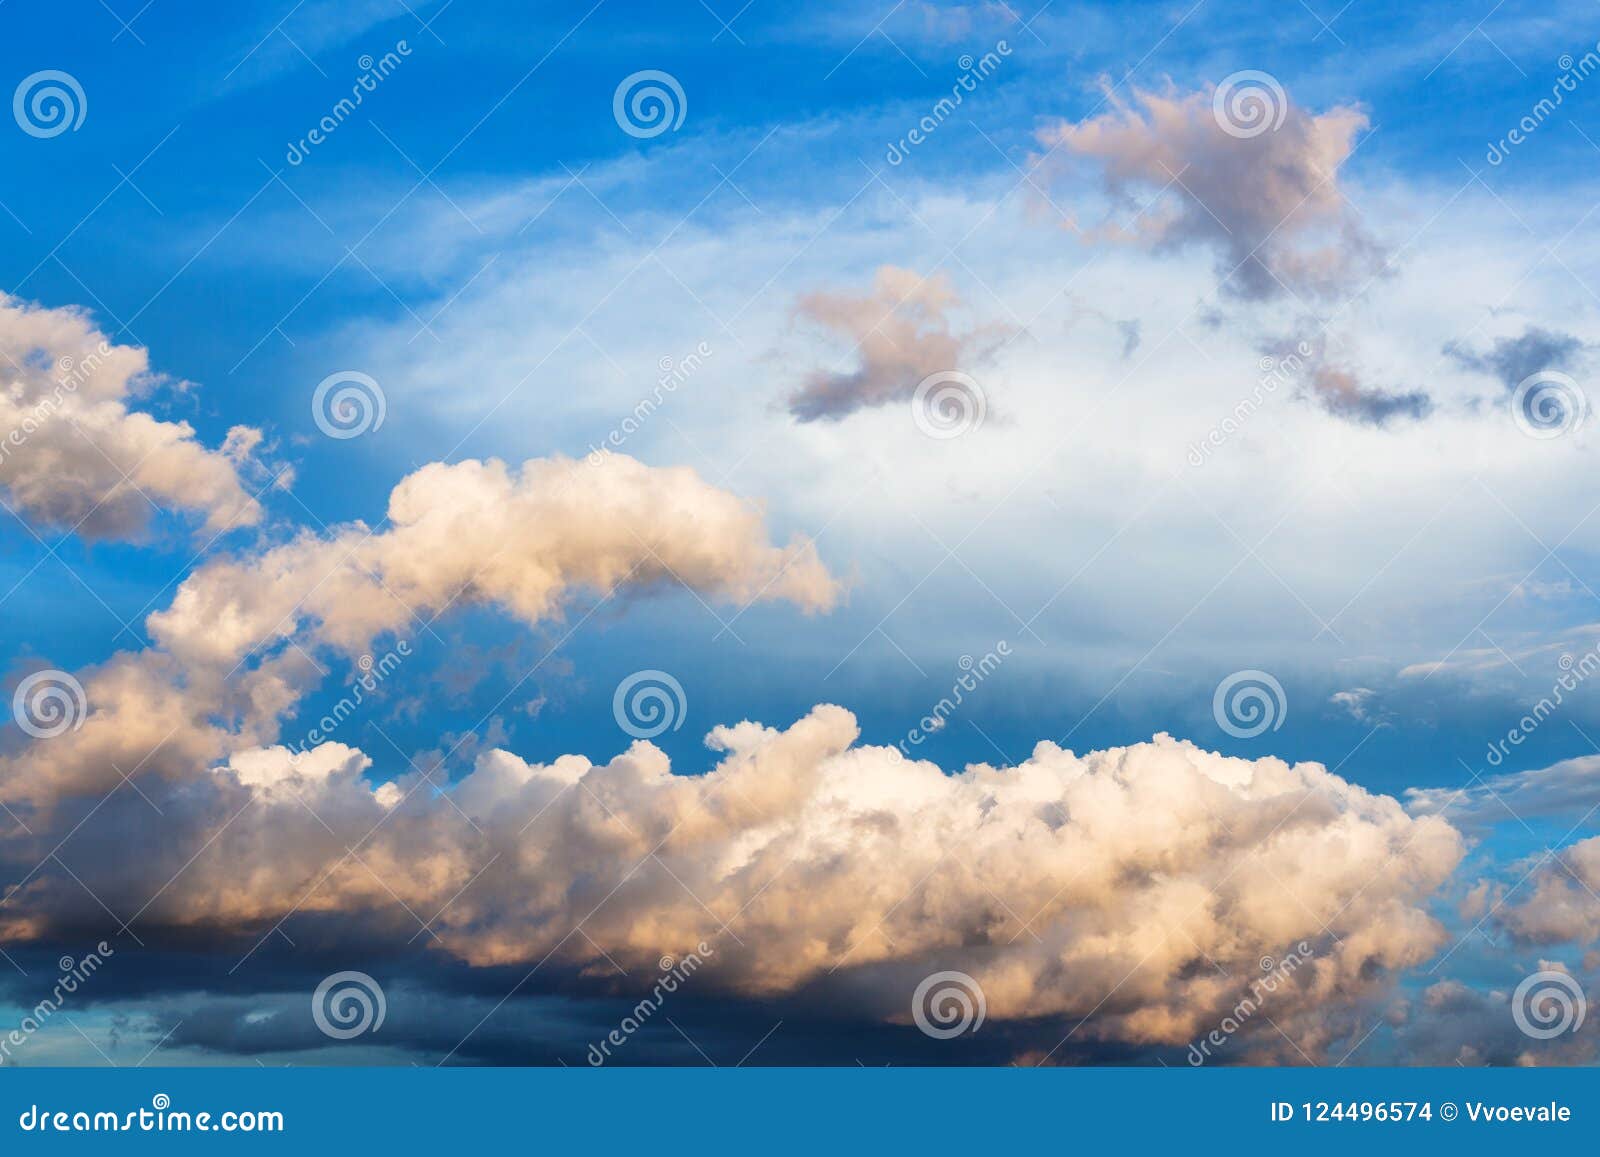 cumuli clouds in dark blue sky in summer evening